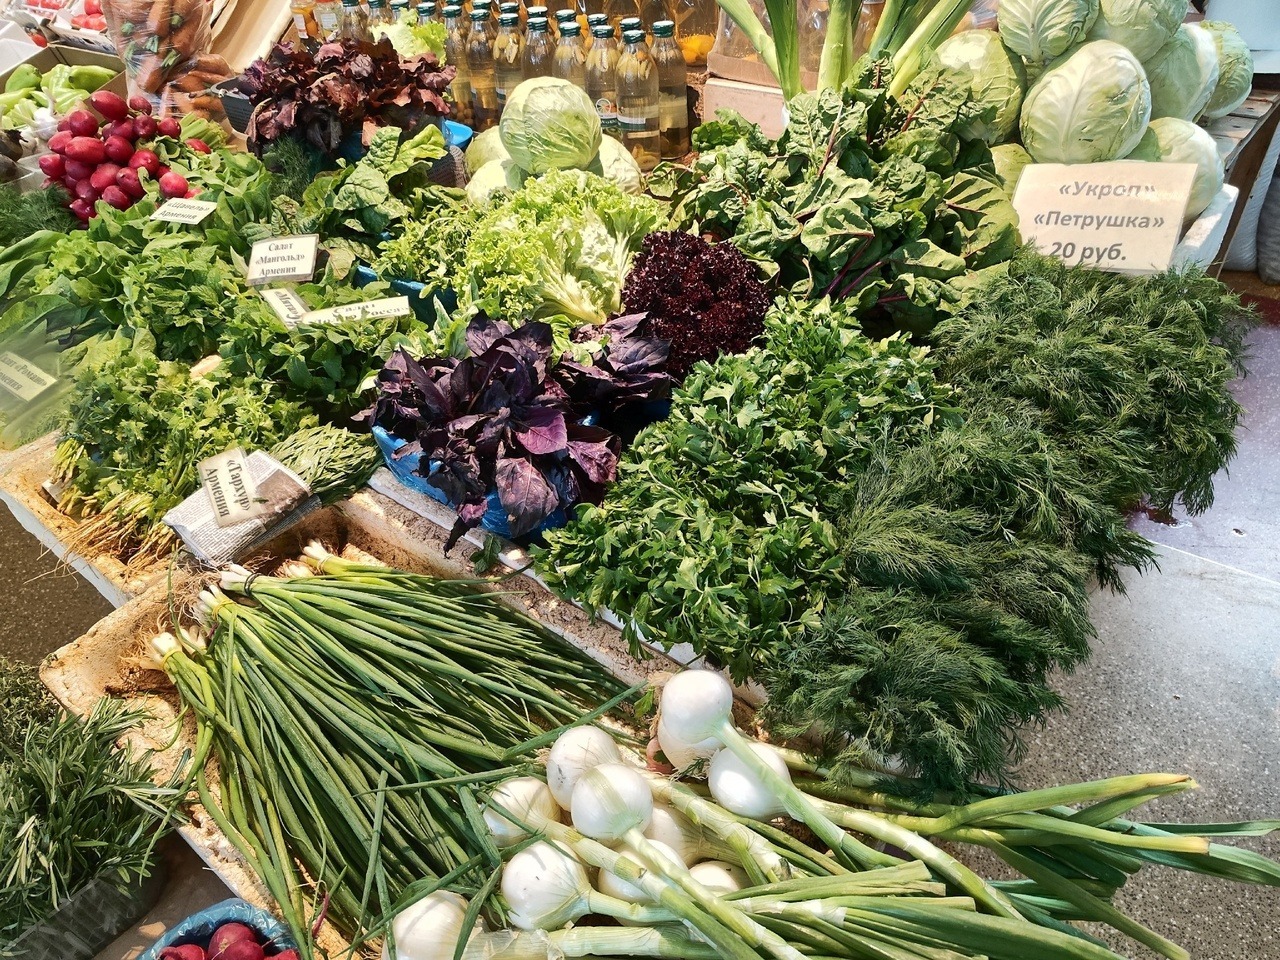 Сколько стоят овощи и фрукты в торговых рядах